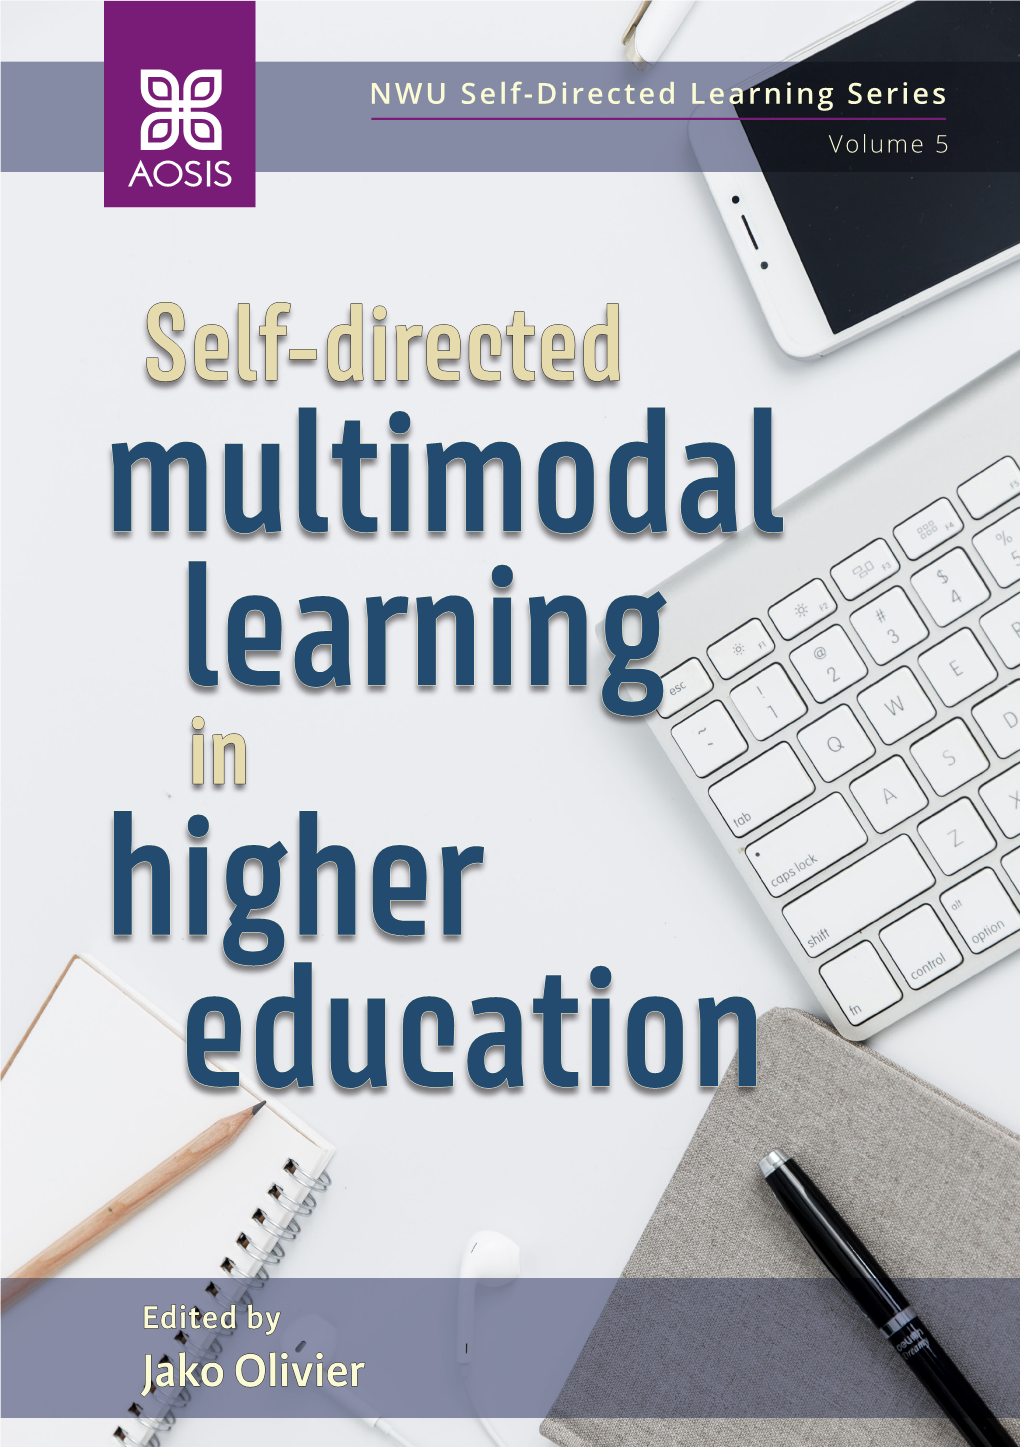 Higher Education Multimodal Learning